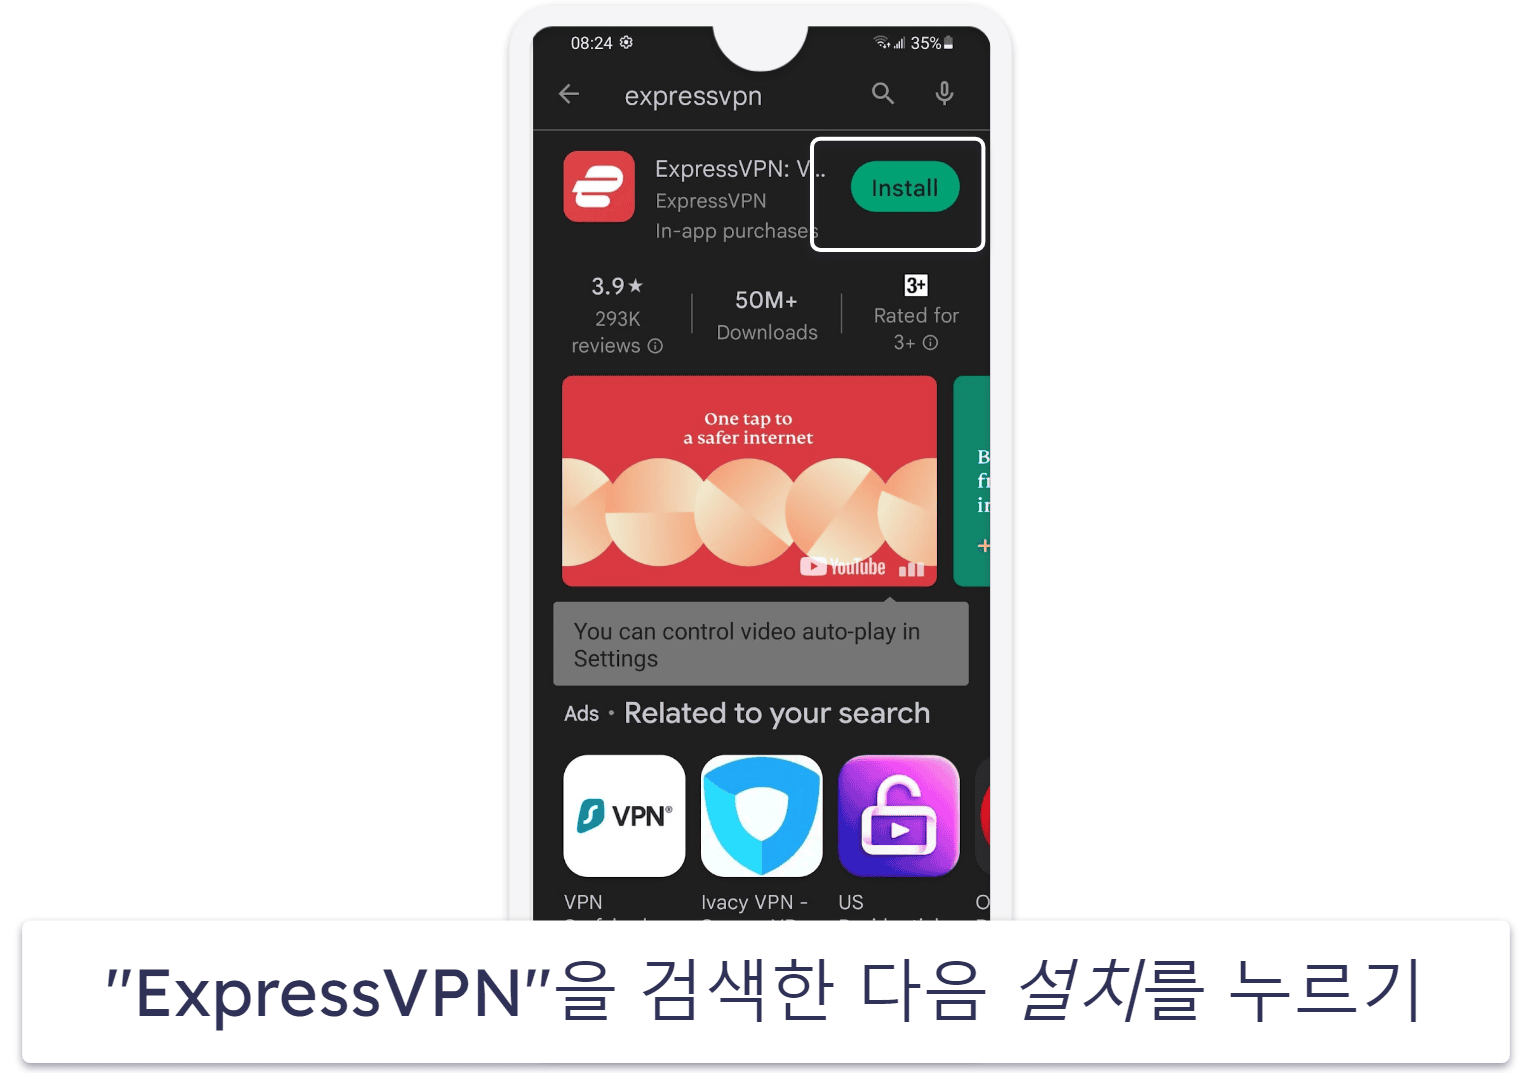 ExpressVPN 7일 무료 체험을 신청하는 방법 (모바일 전용)